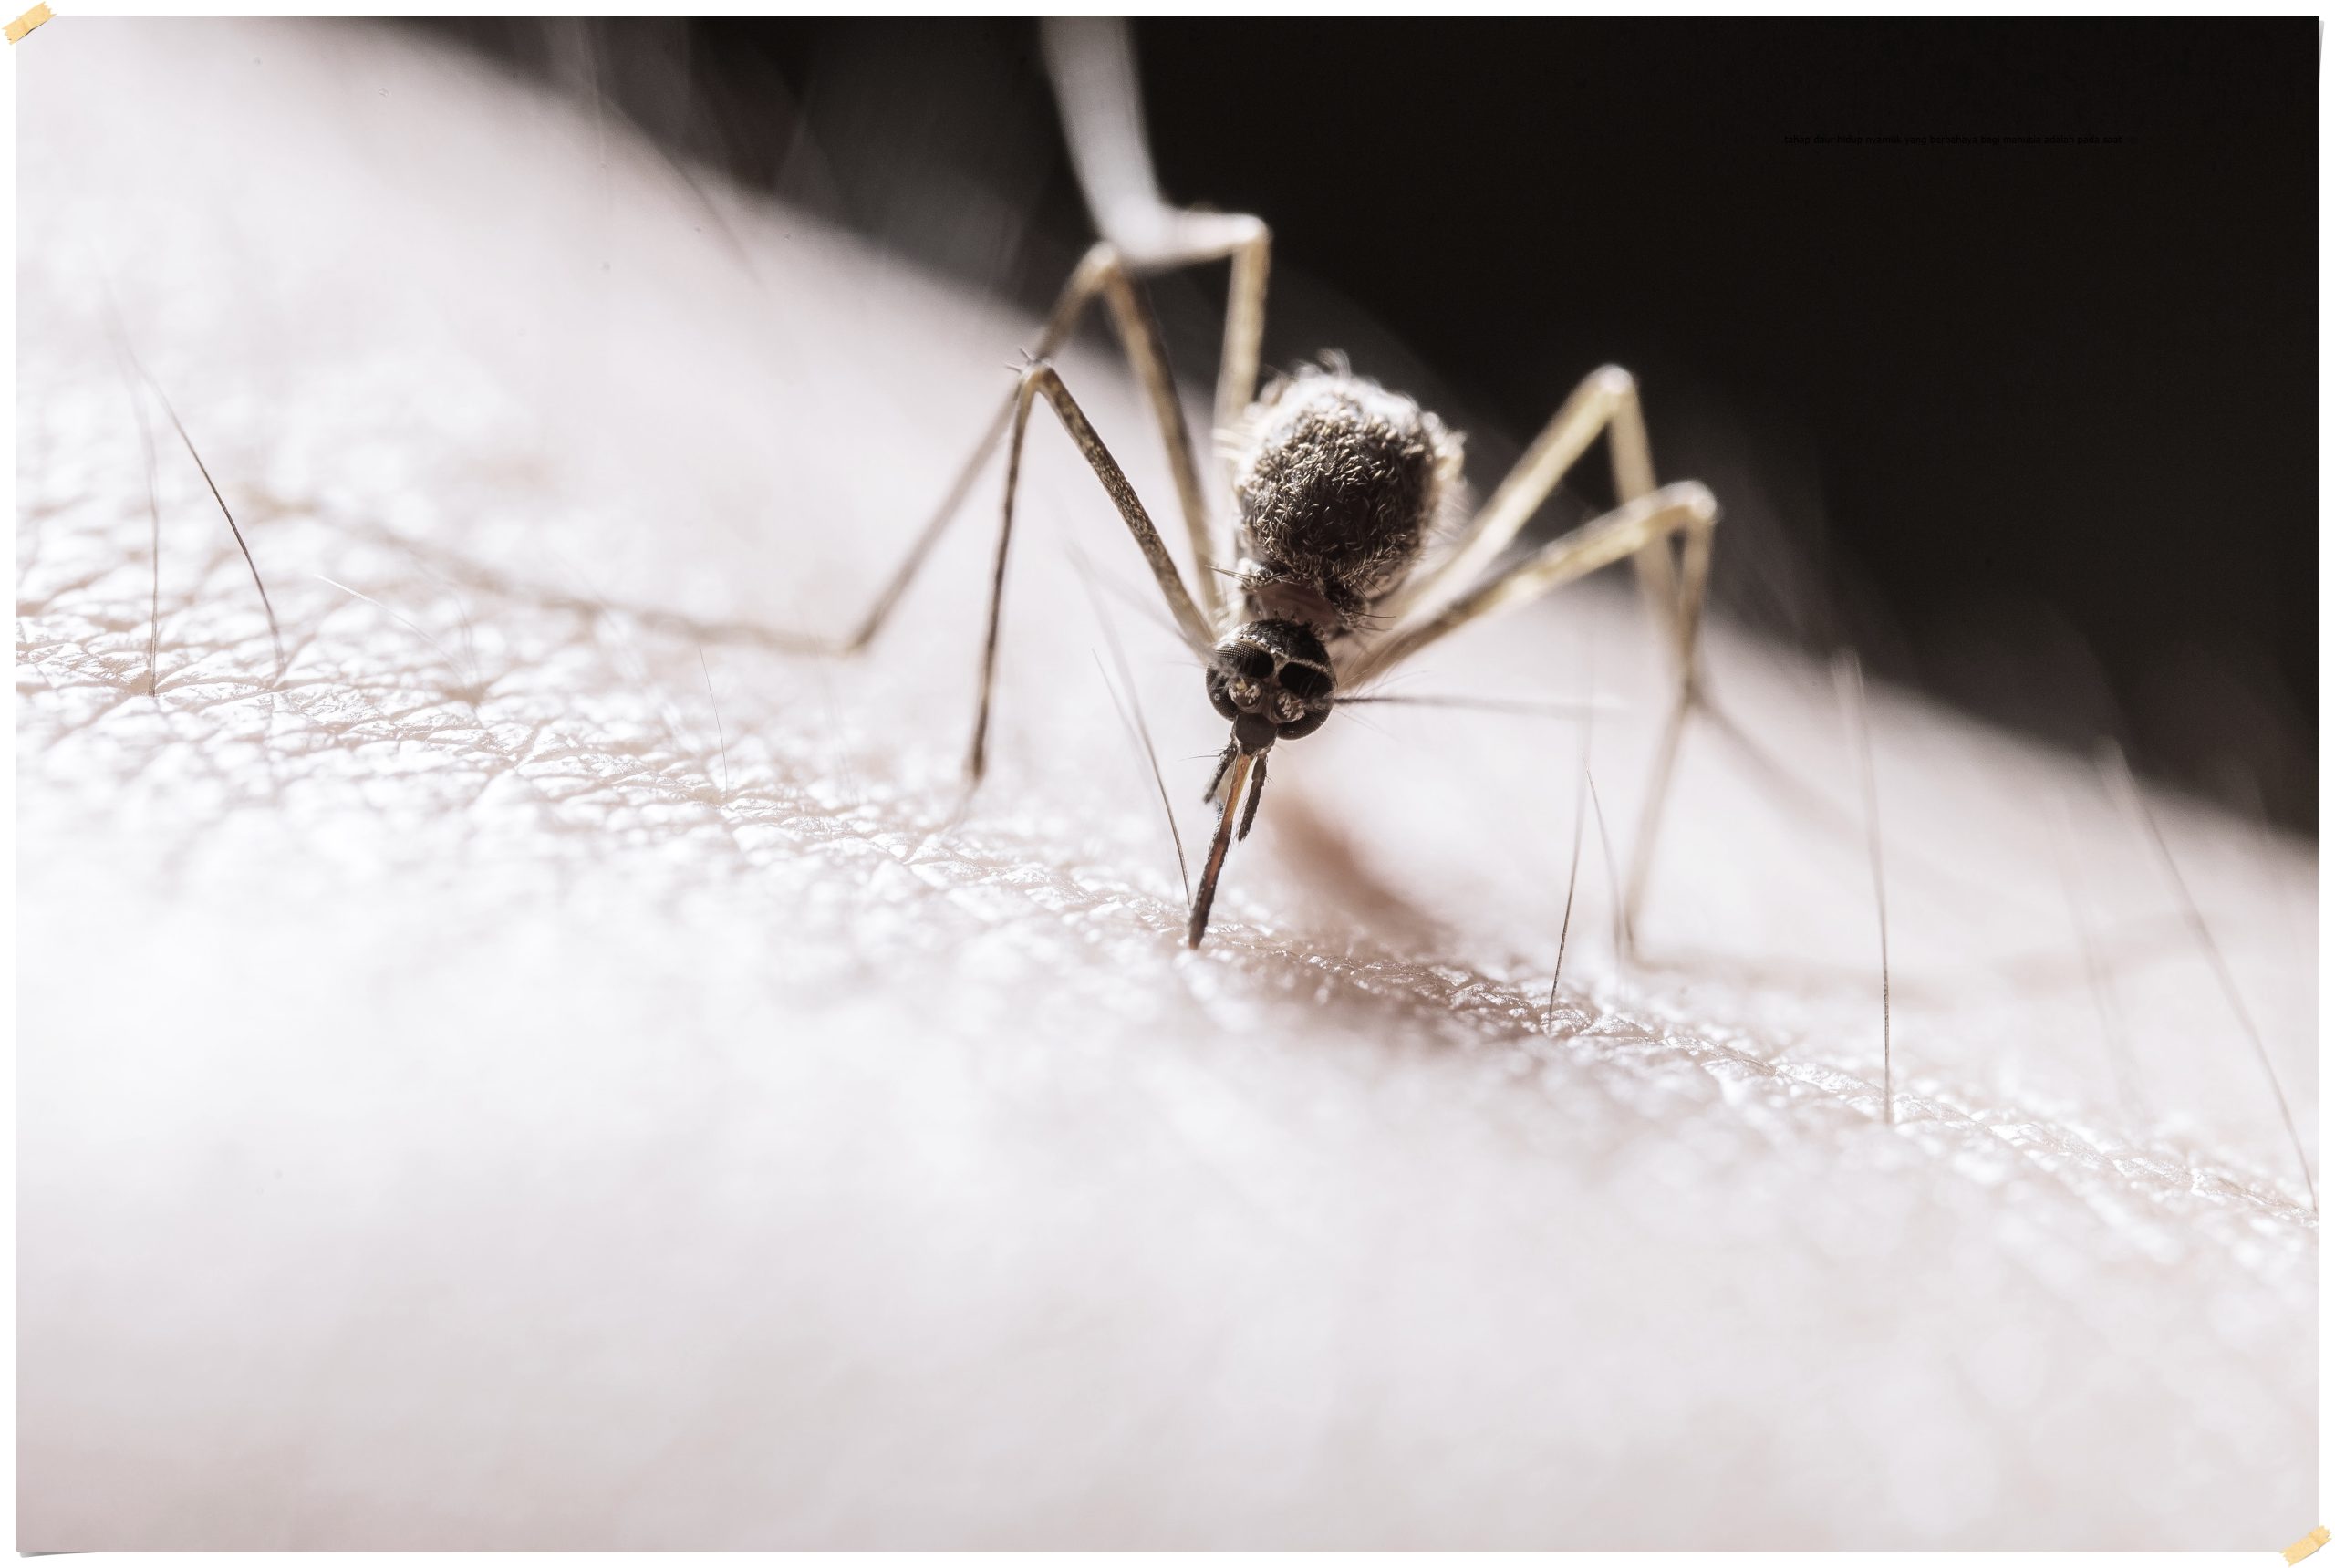 tahap daur hidup nyamuk yang berbahaya bagi manusia adalah pada saat image